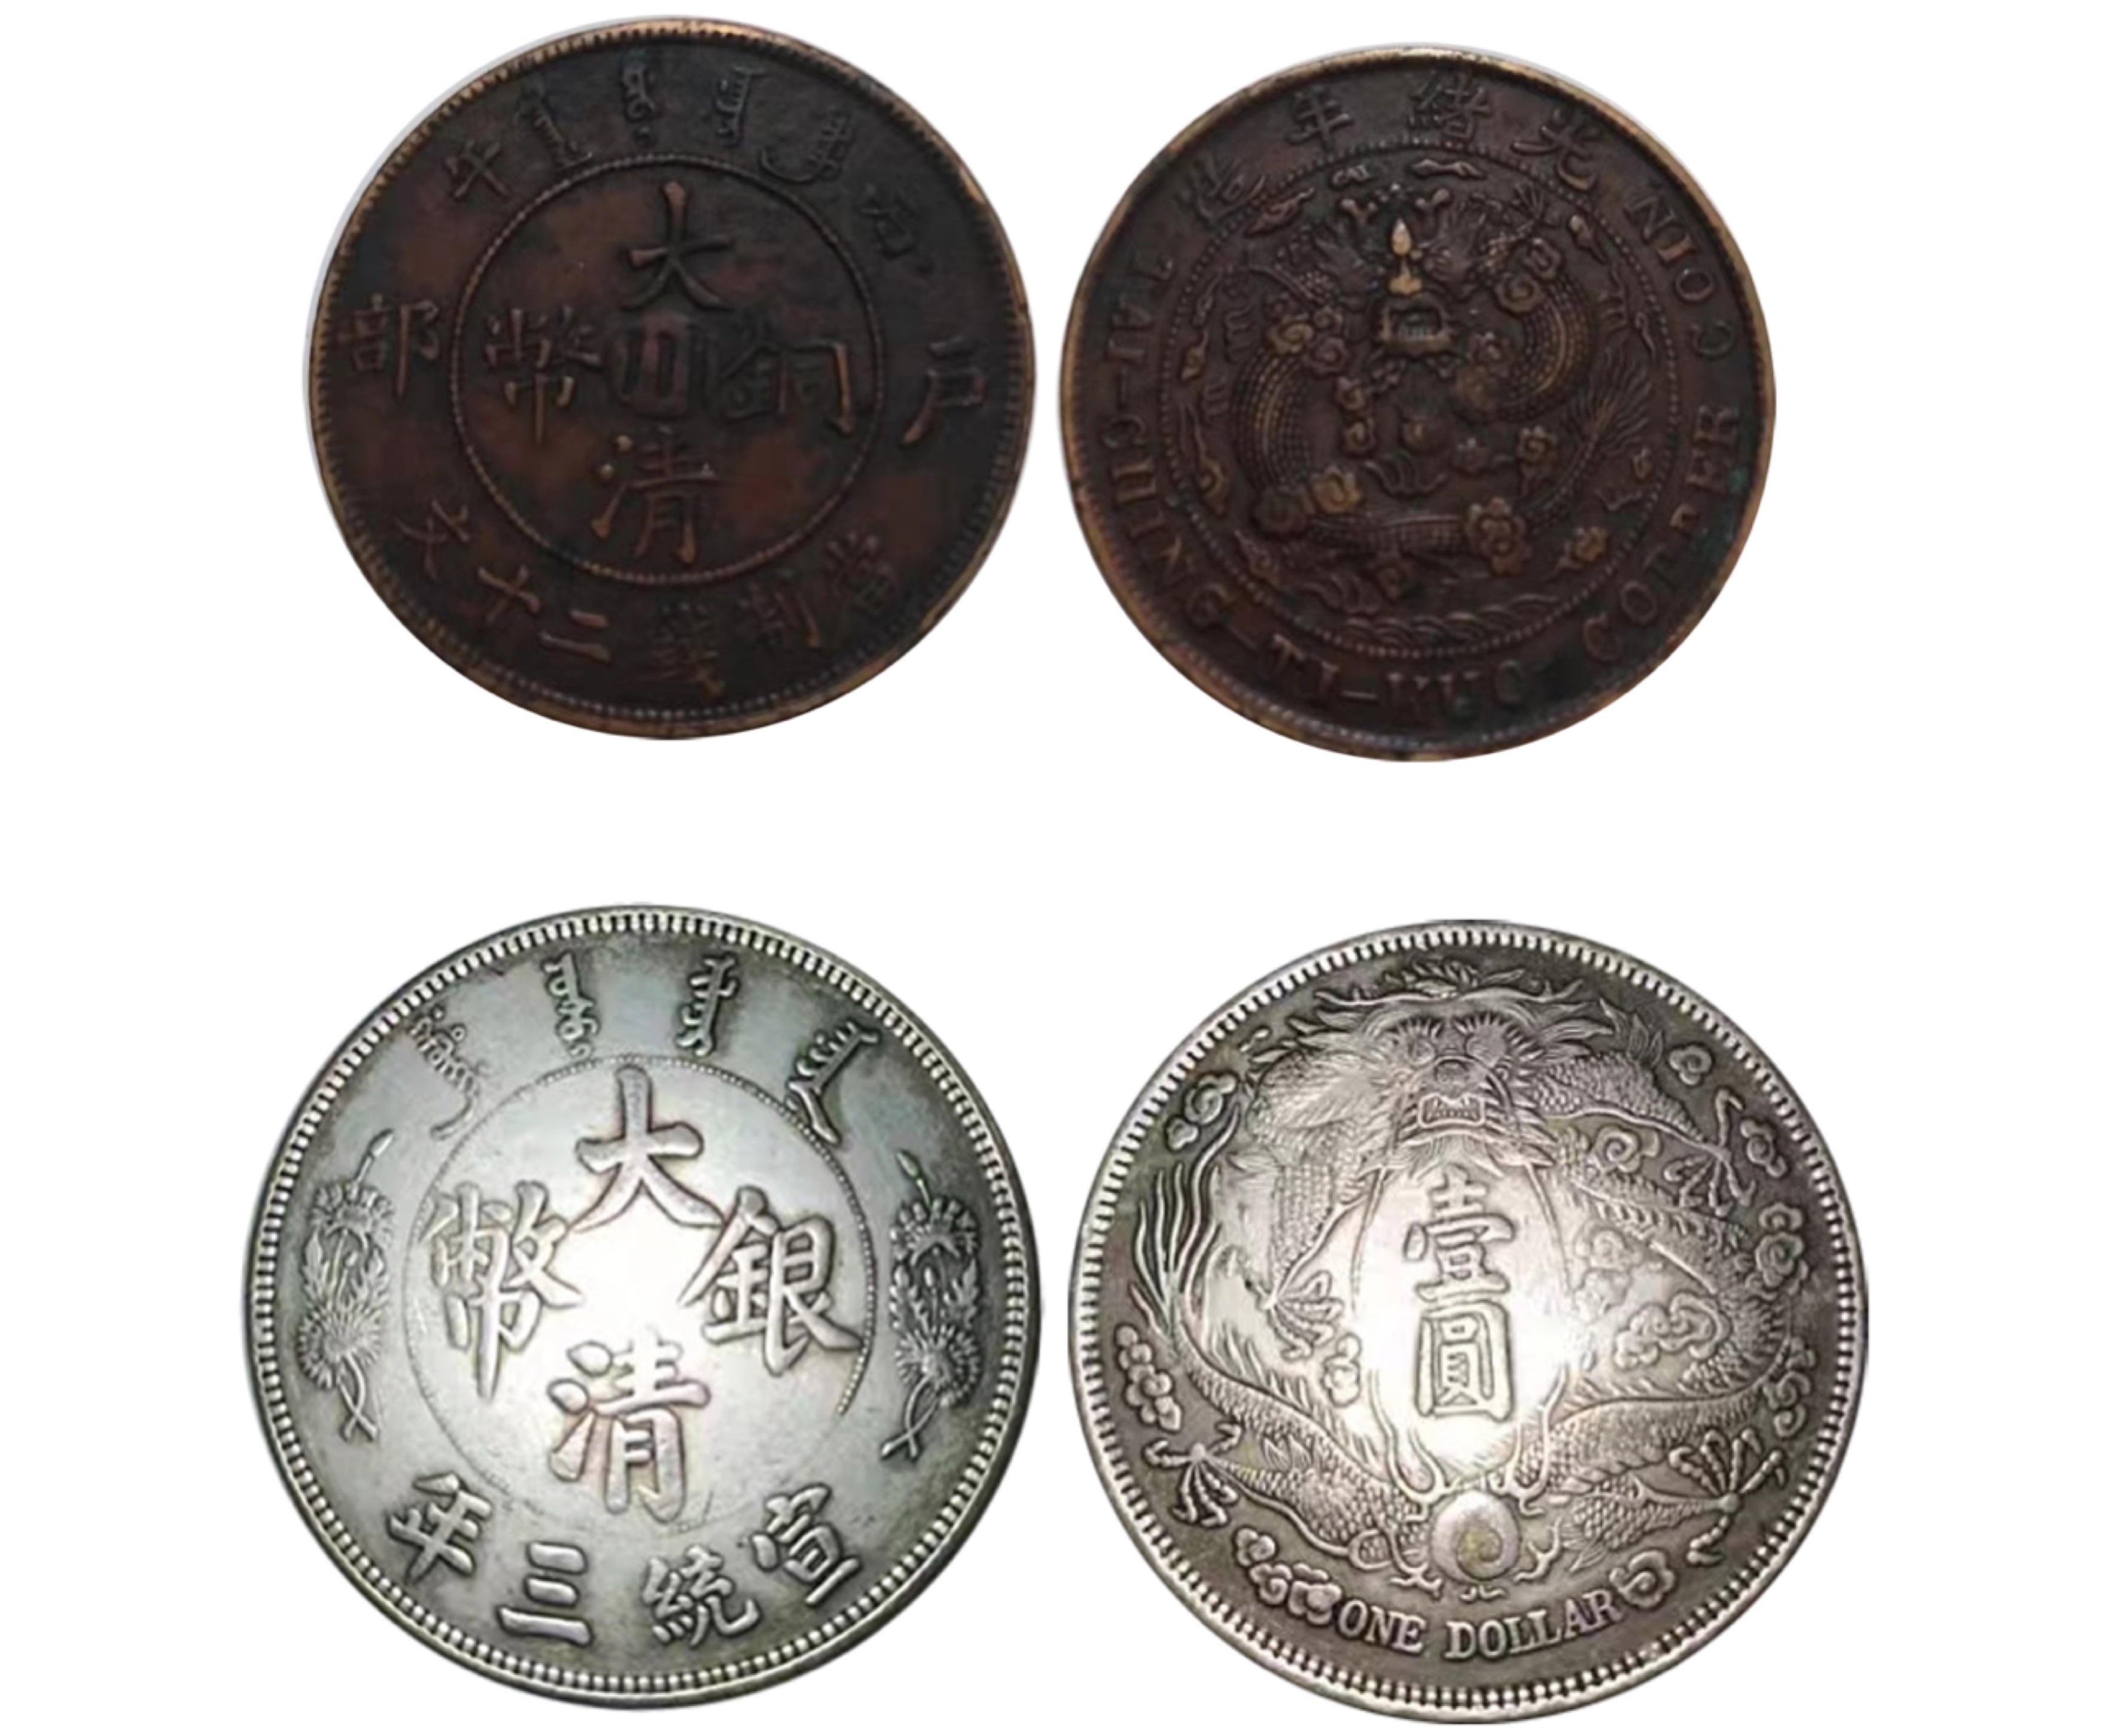 大清铜币中心川二十文样币和大清银币长须龙样币两枚一组